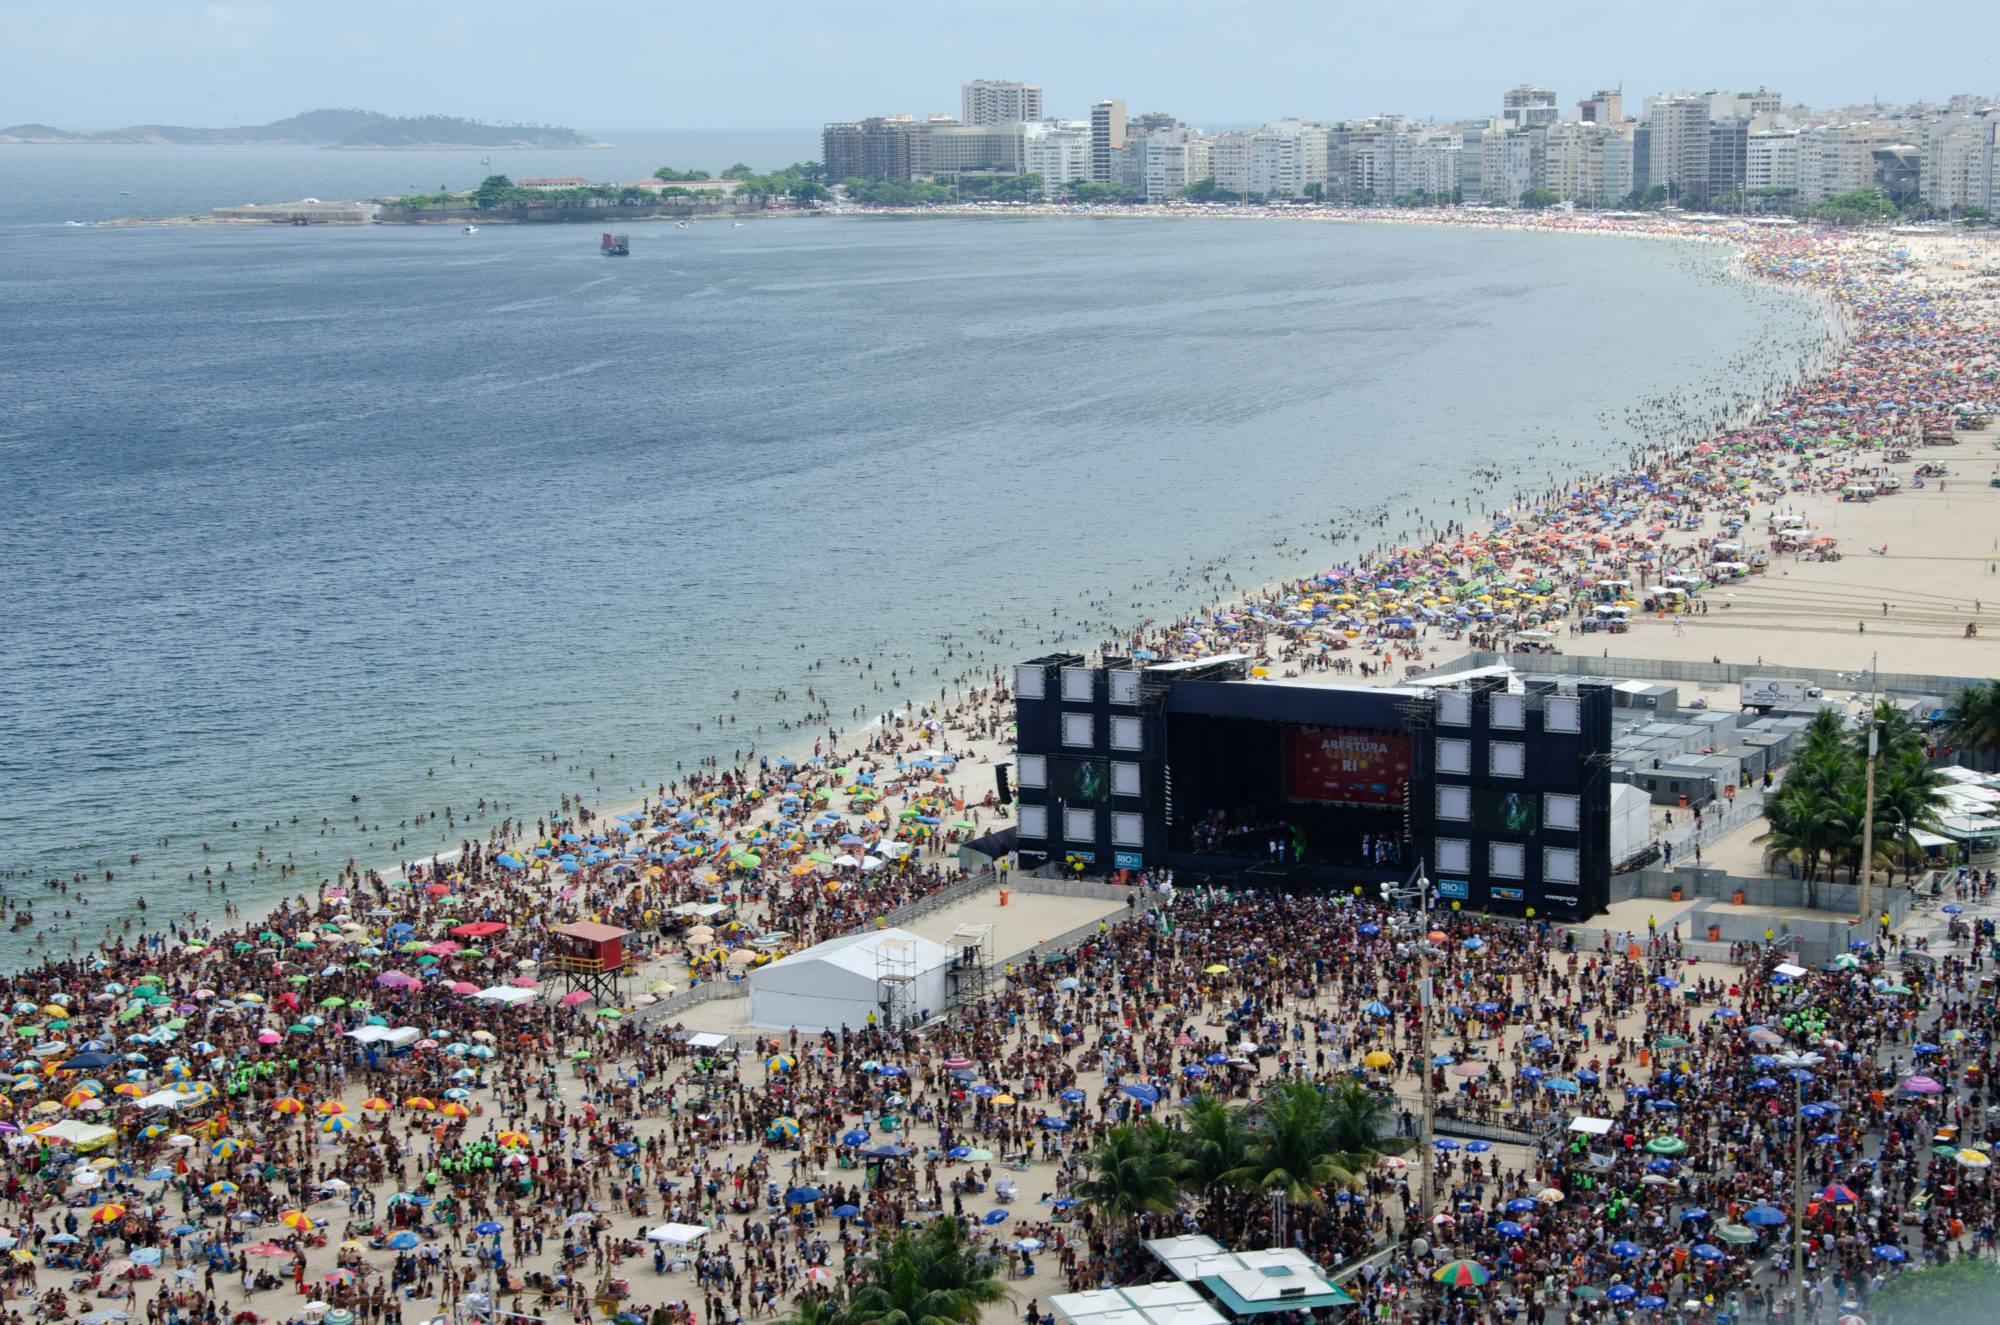 The Favorita block at Copacabana beach, Rio de Janeiro